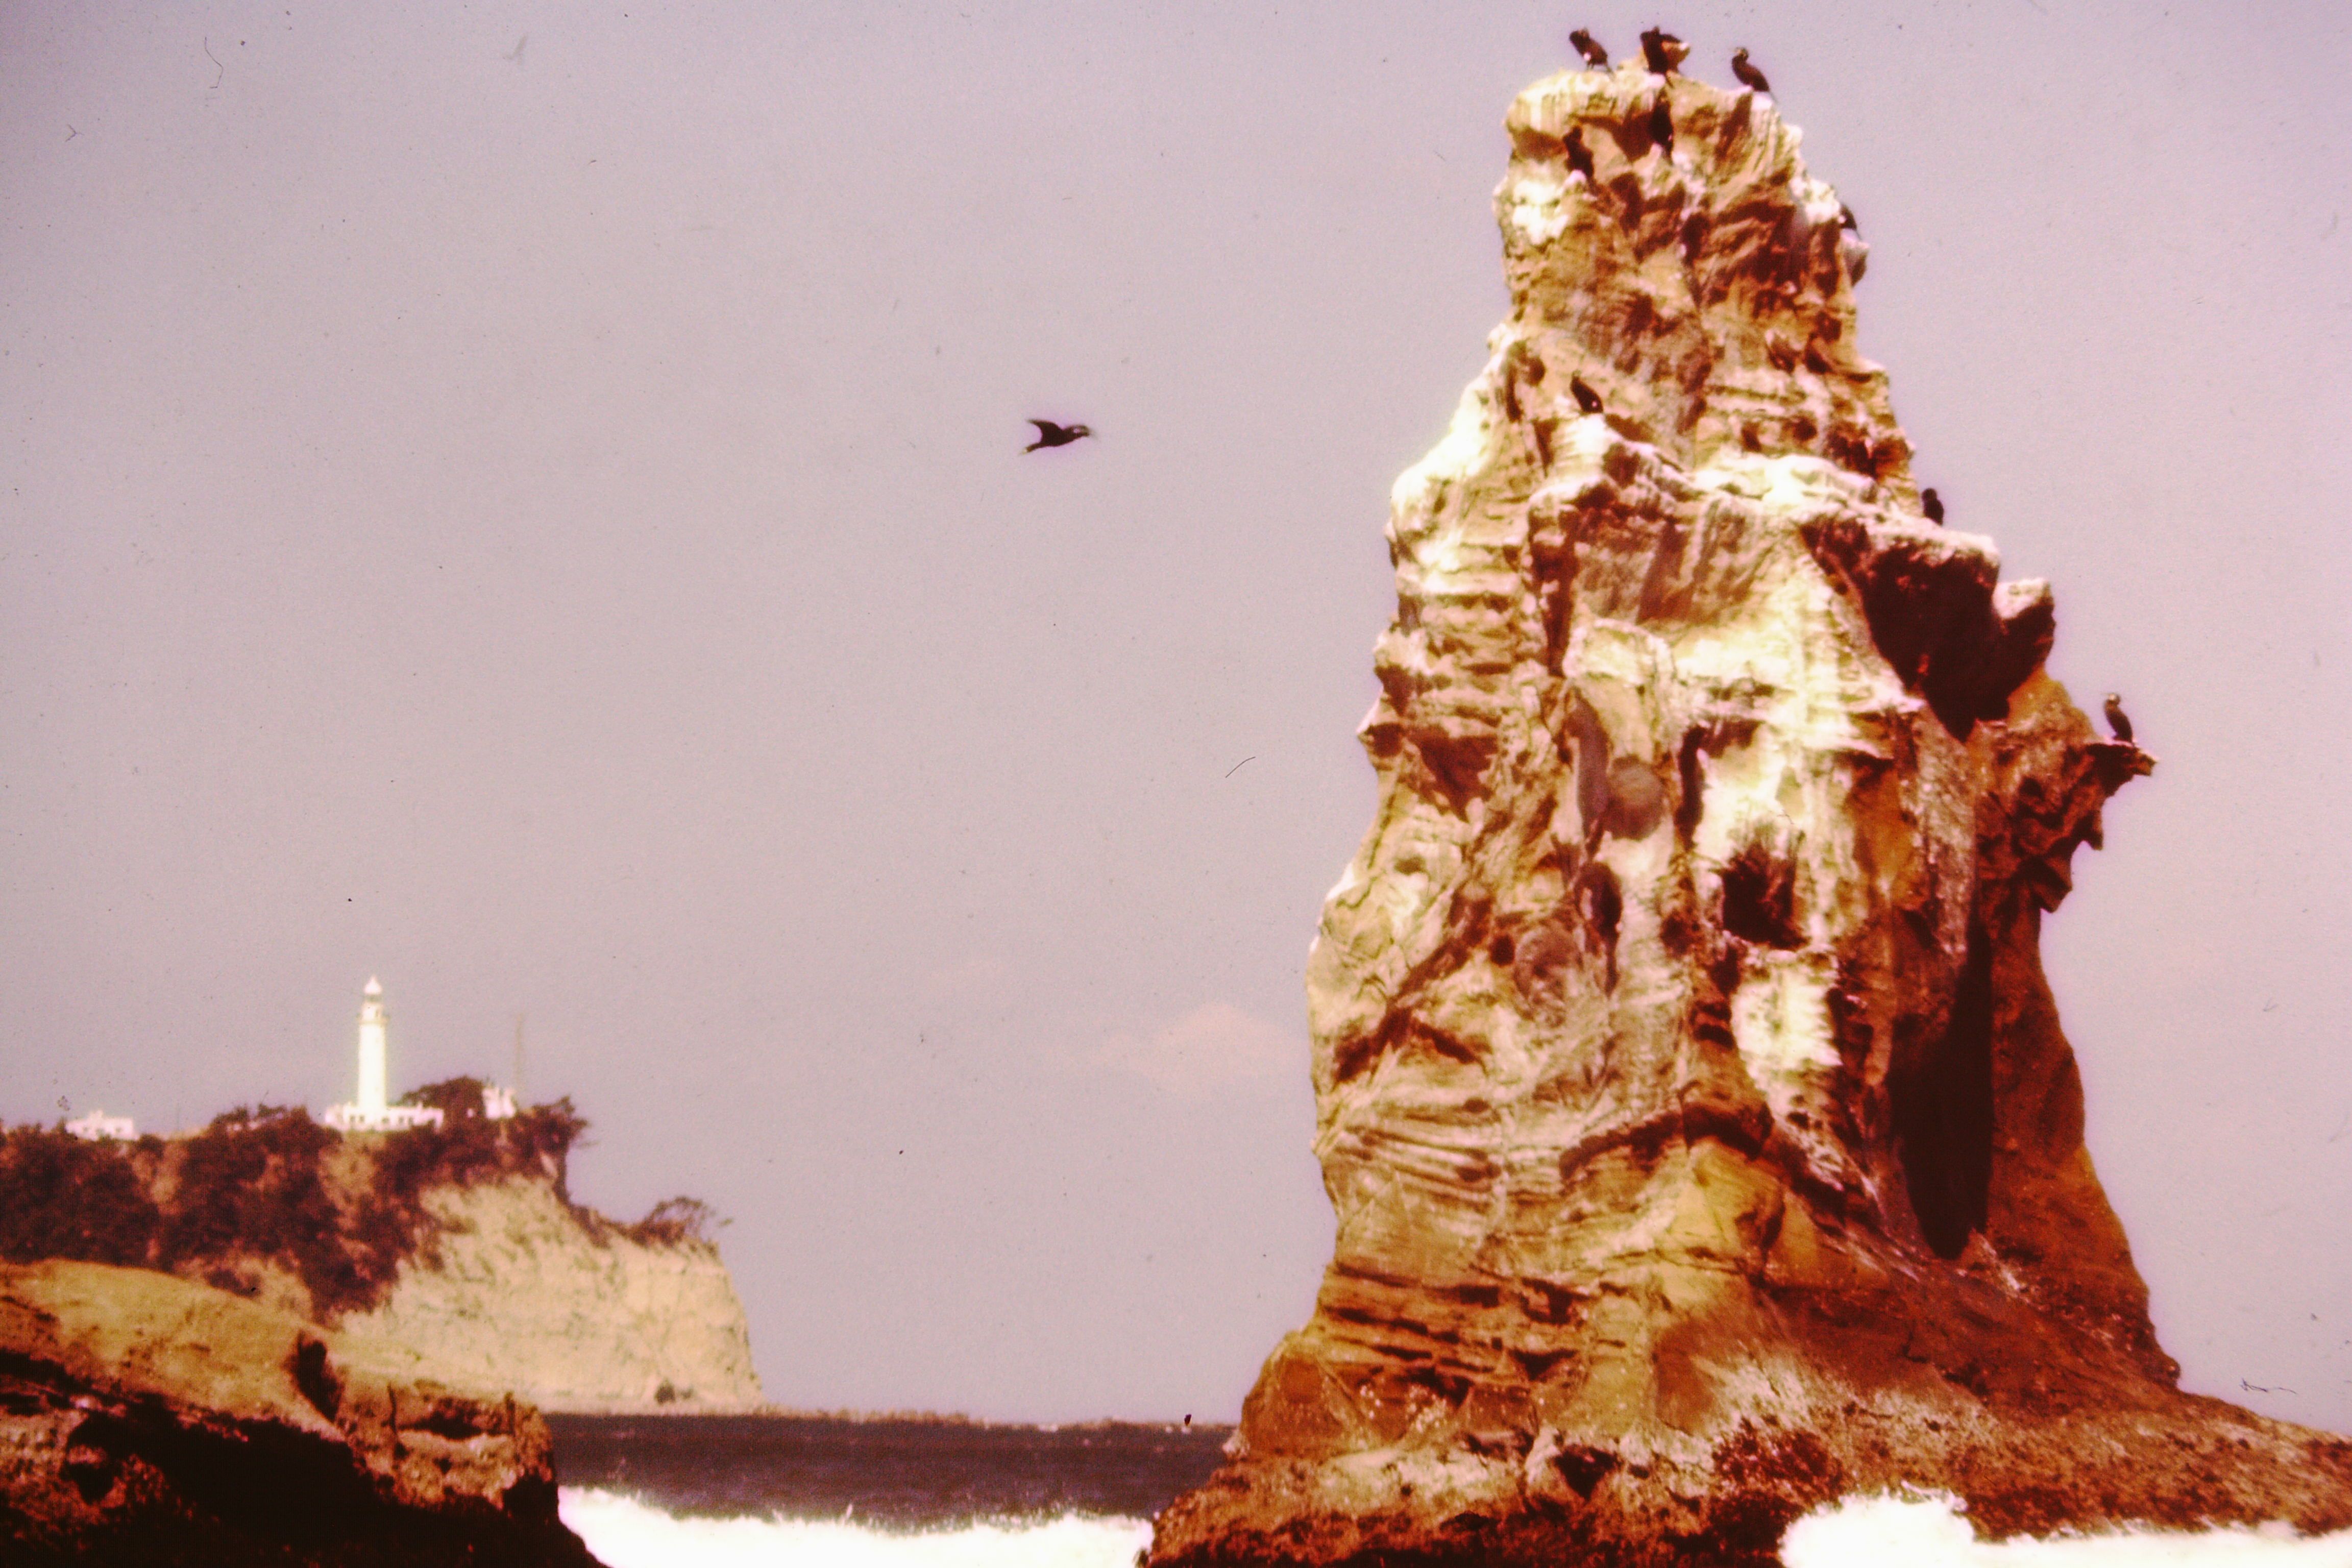 5 二見ケ浦の鵜と遠方に塩屋埼灯台(昭和50年代、いわき市撮影)